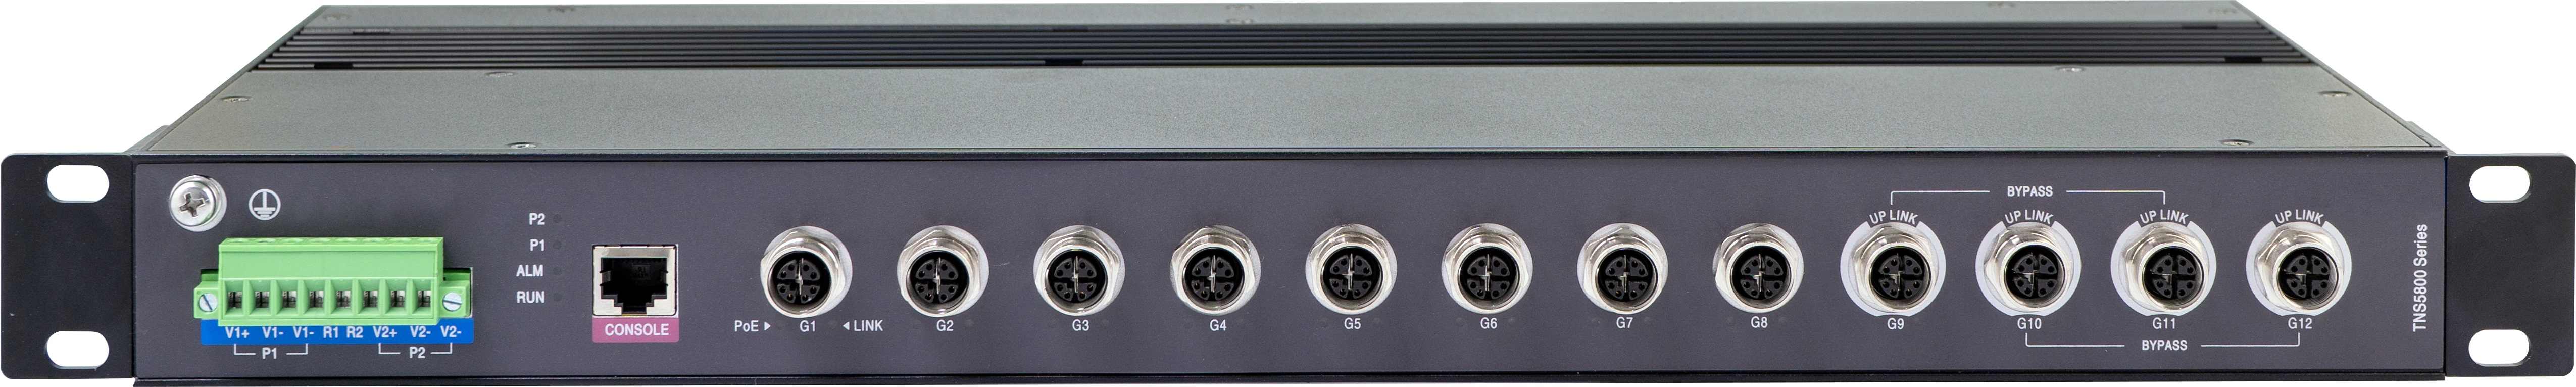 12-портовые стоечные промышленные Ethernet коммутаторы для железнодорожного транспорта 3onedata TNS5800